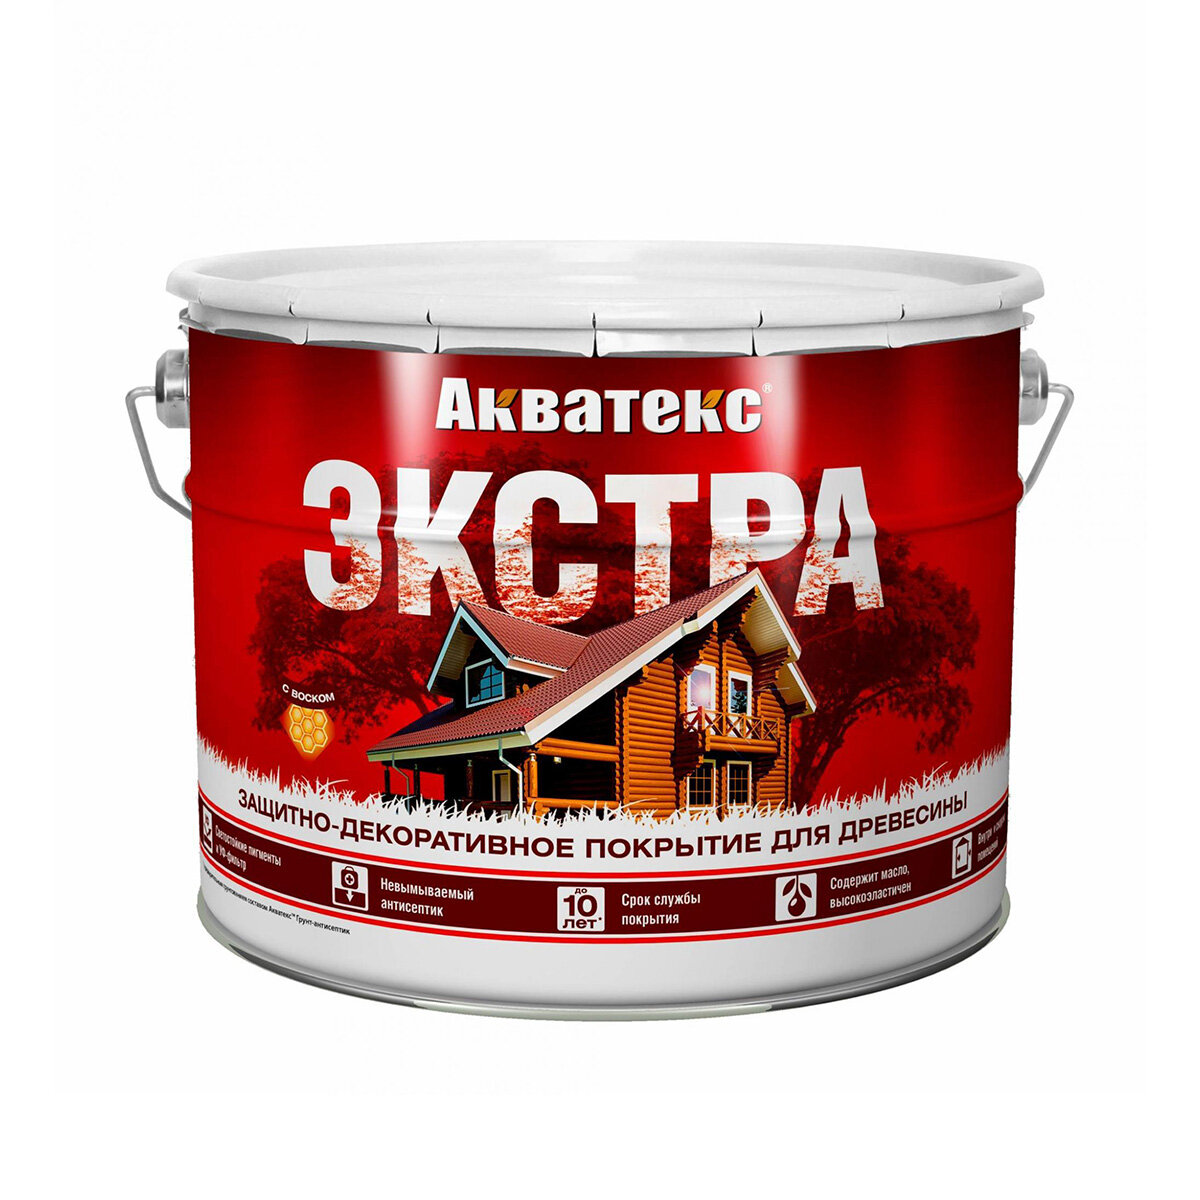 Акватекс Акватекс-Экстра защитно-декоративное покрытие для древесины алкидное полуглянцевое калужница 9л